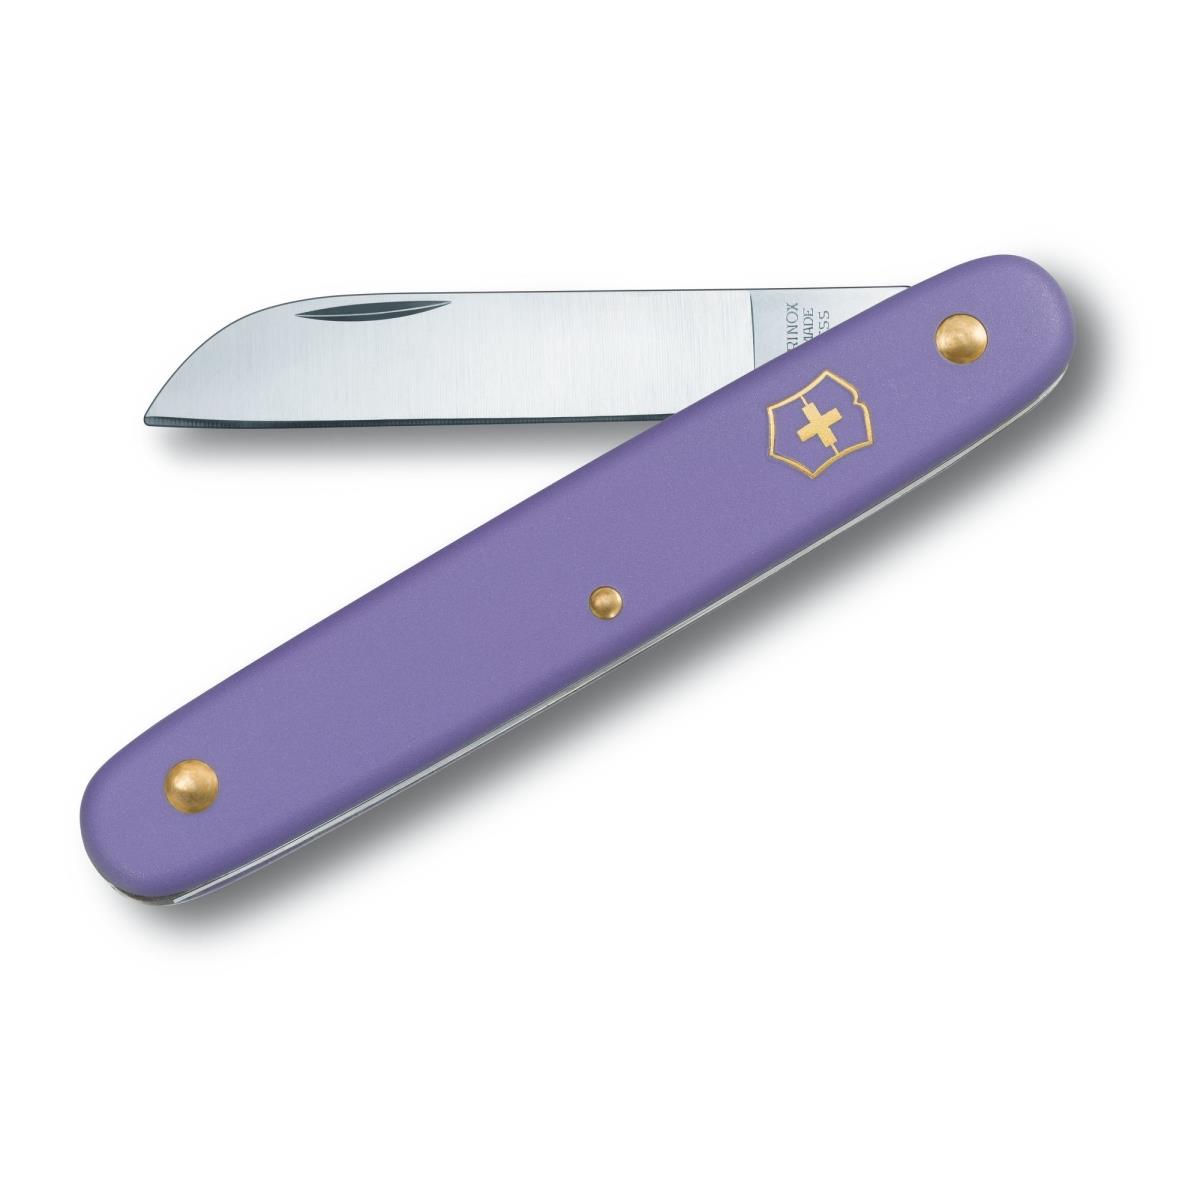 Нож 3.9050.22B1 Floral Фиолетовый VICTORINOX нож перочинный victorinox classic alox sd colors electric lavender фиолетовый